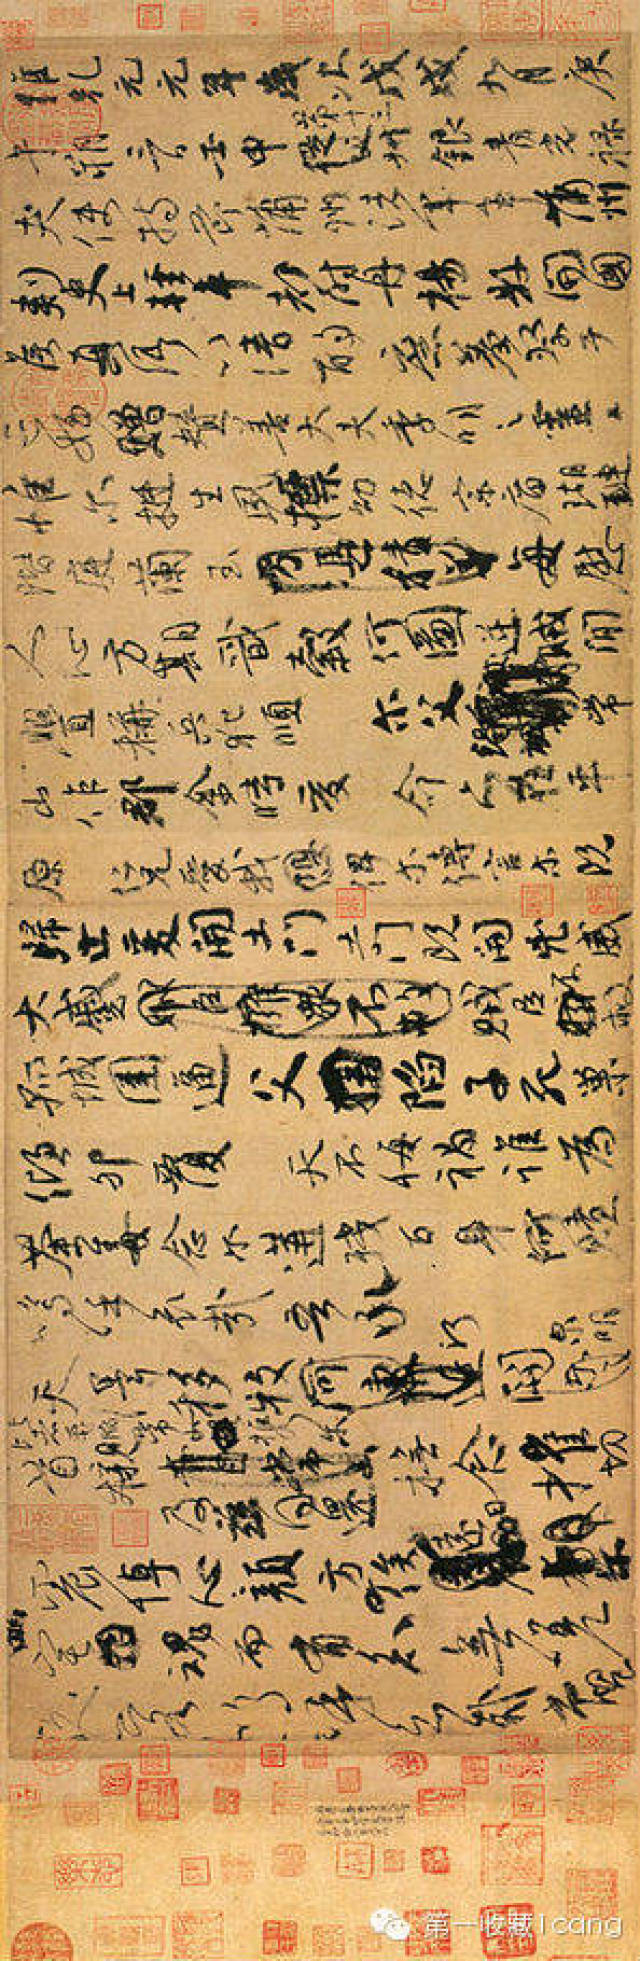 《祭侄稿》全称《祭侄季明文稿,书于唐乾元元年(公元758年.